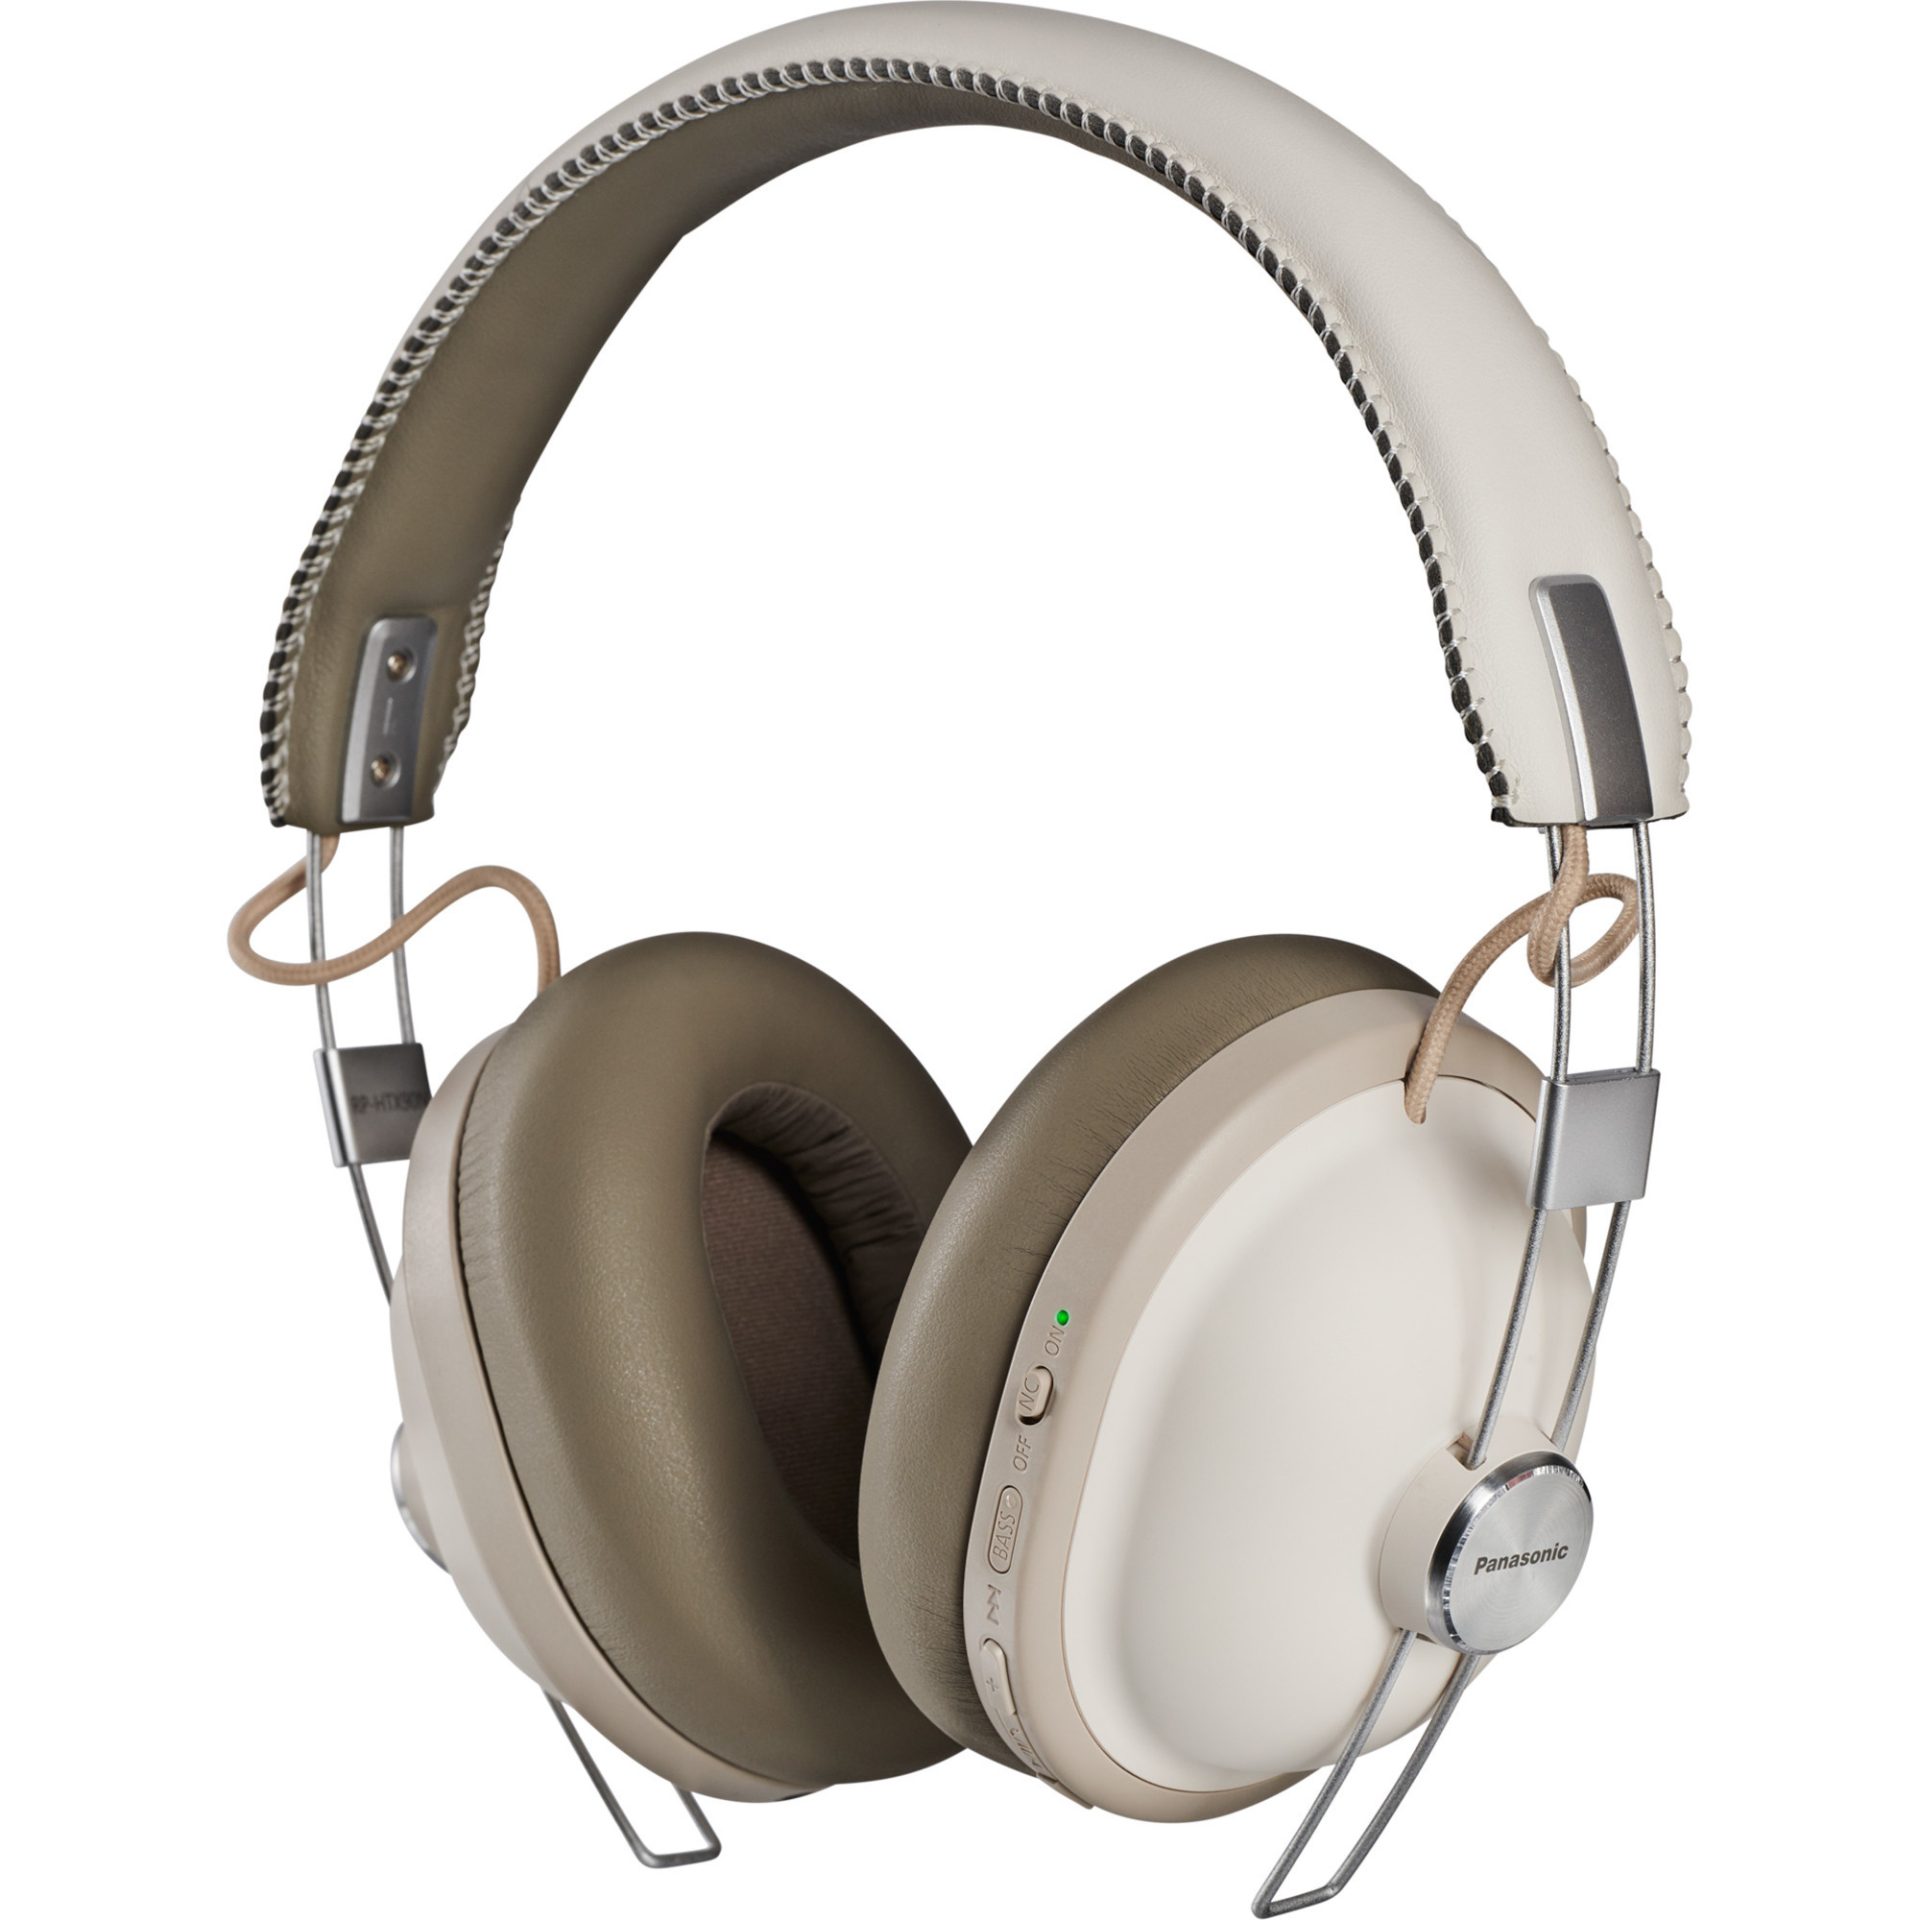 Panasonic RP-HTX90 bezdrátová Bluetooth sluchátka přes uši v retro stylu (redukce šumu, 40mm reproduktory, Acoustic Bass Control, 24h práce), bílá